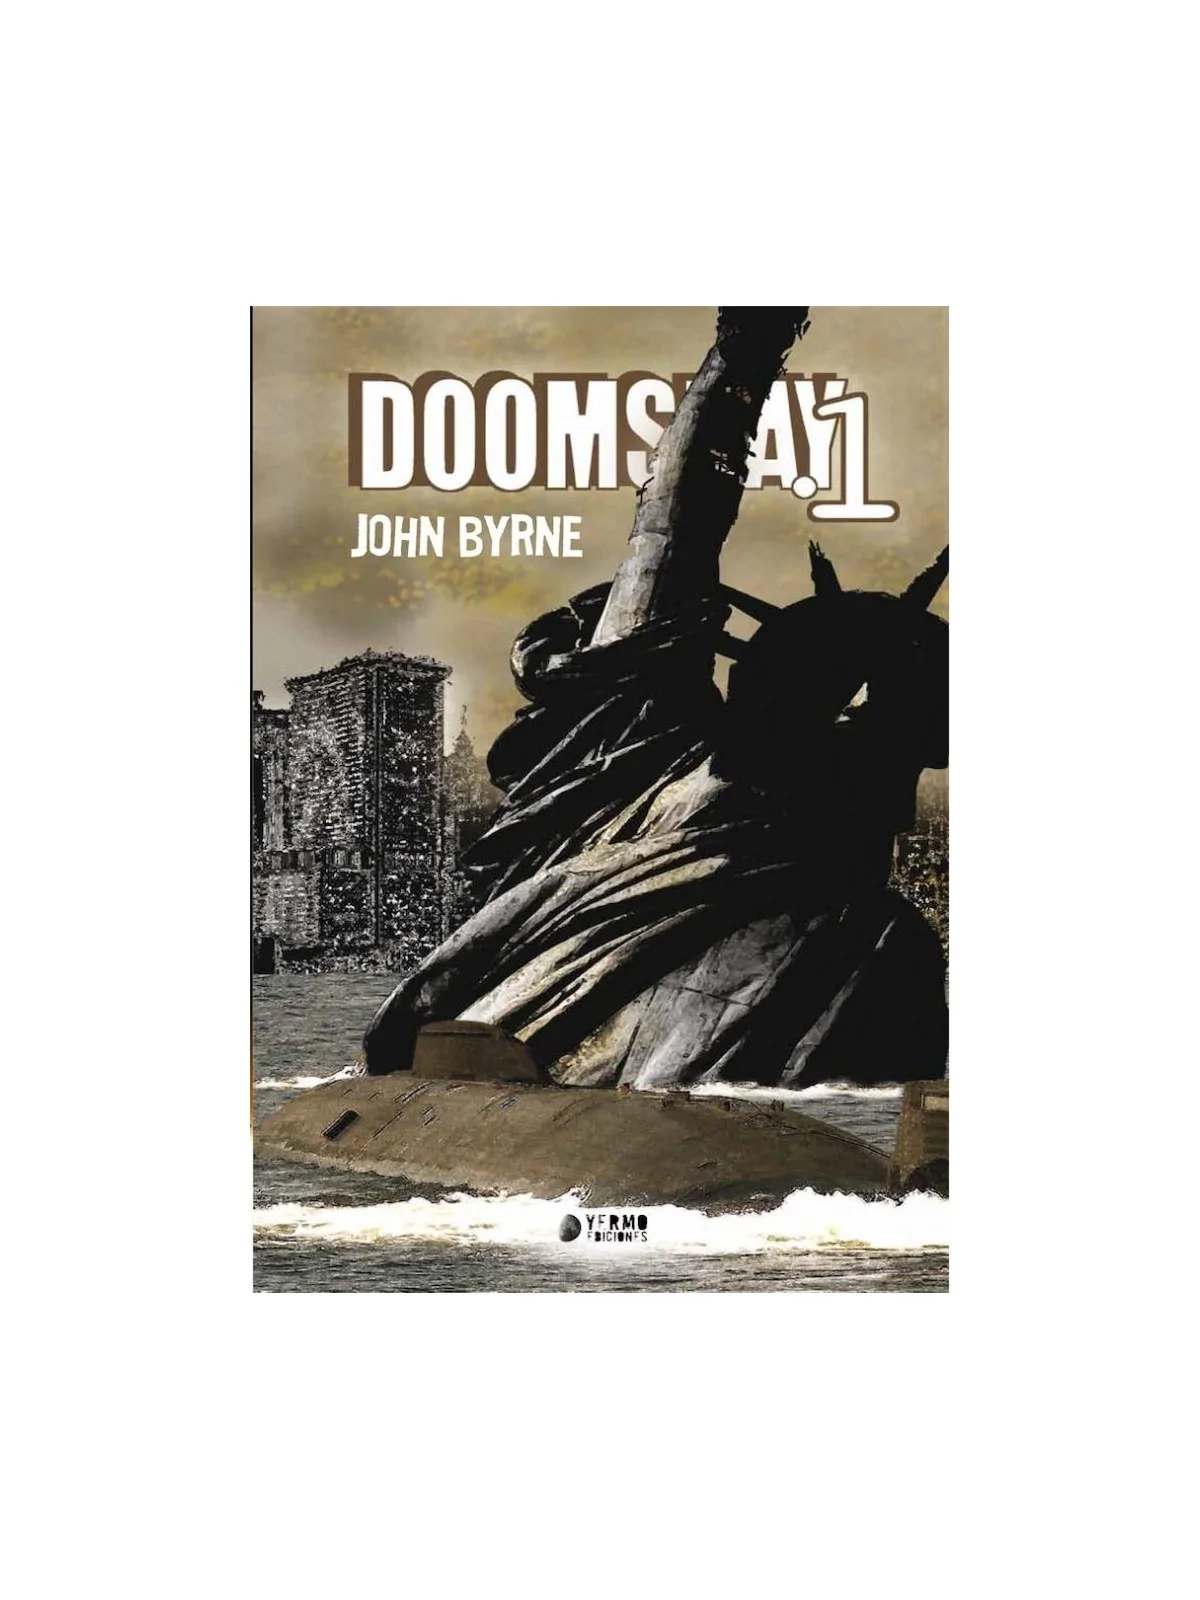 Comprar Doomsday 01 barato al mejor precio 15,20 € de Yermo Ediciones